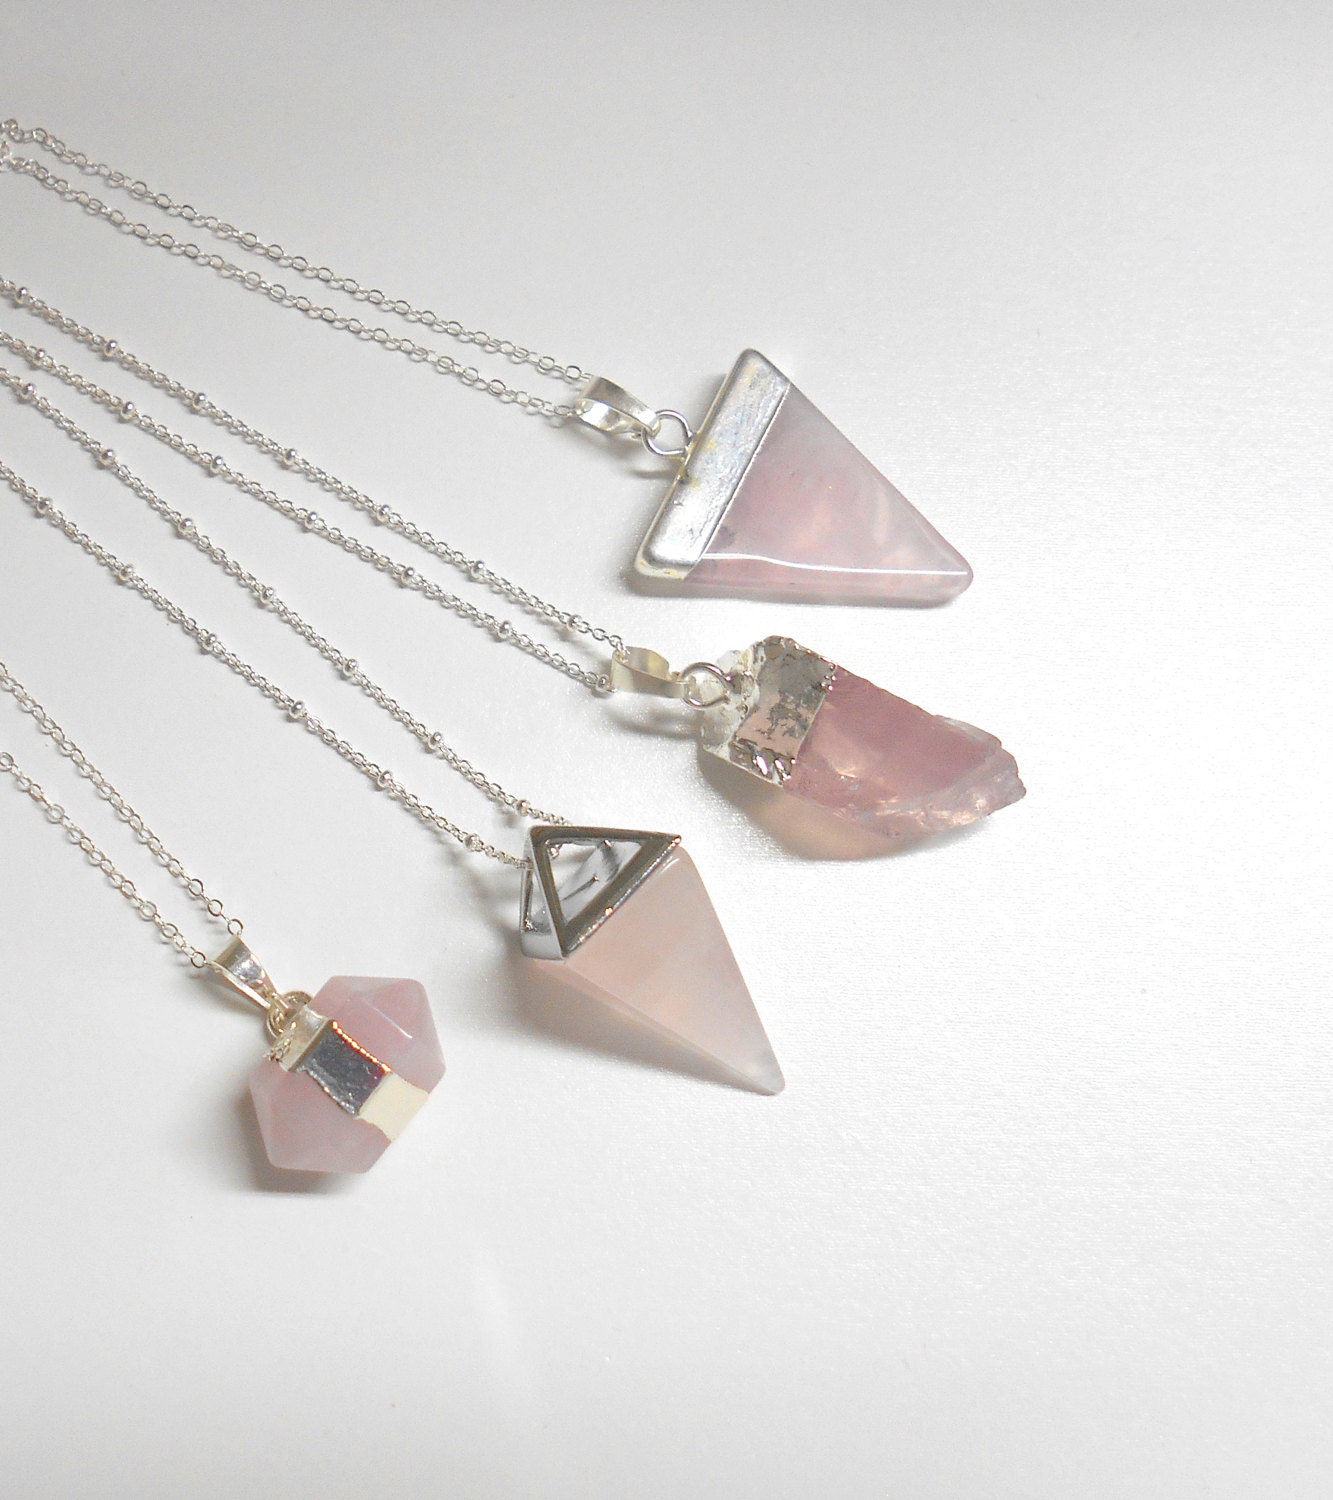 rose quartz stone necklace